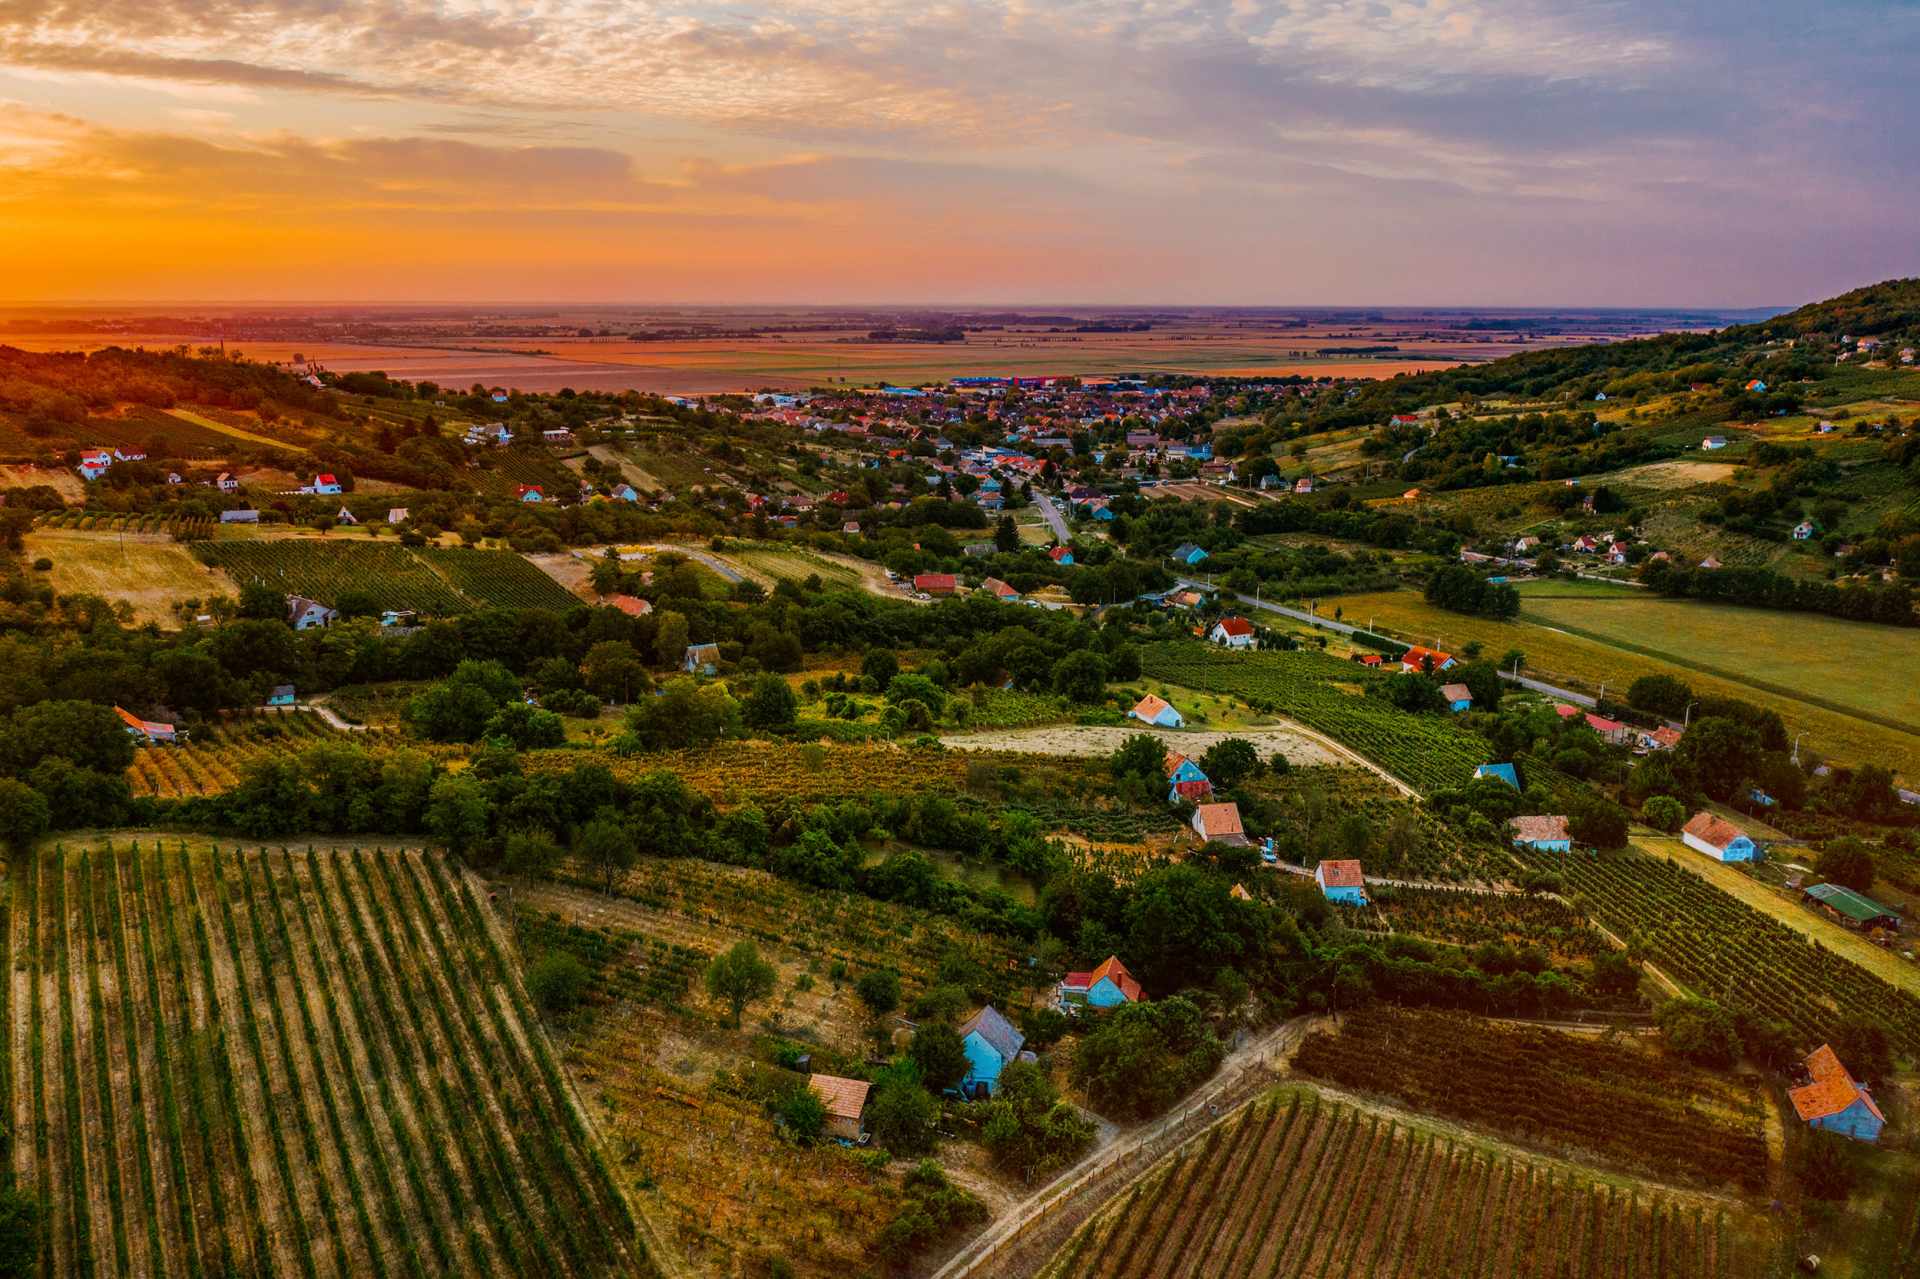 Szekszárd er en vinregion beliggende i det sydlige Ungarn og er kendt for sin produktion af rødvine